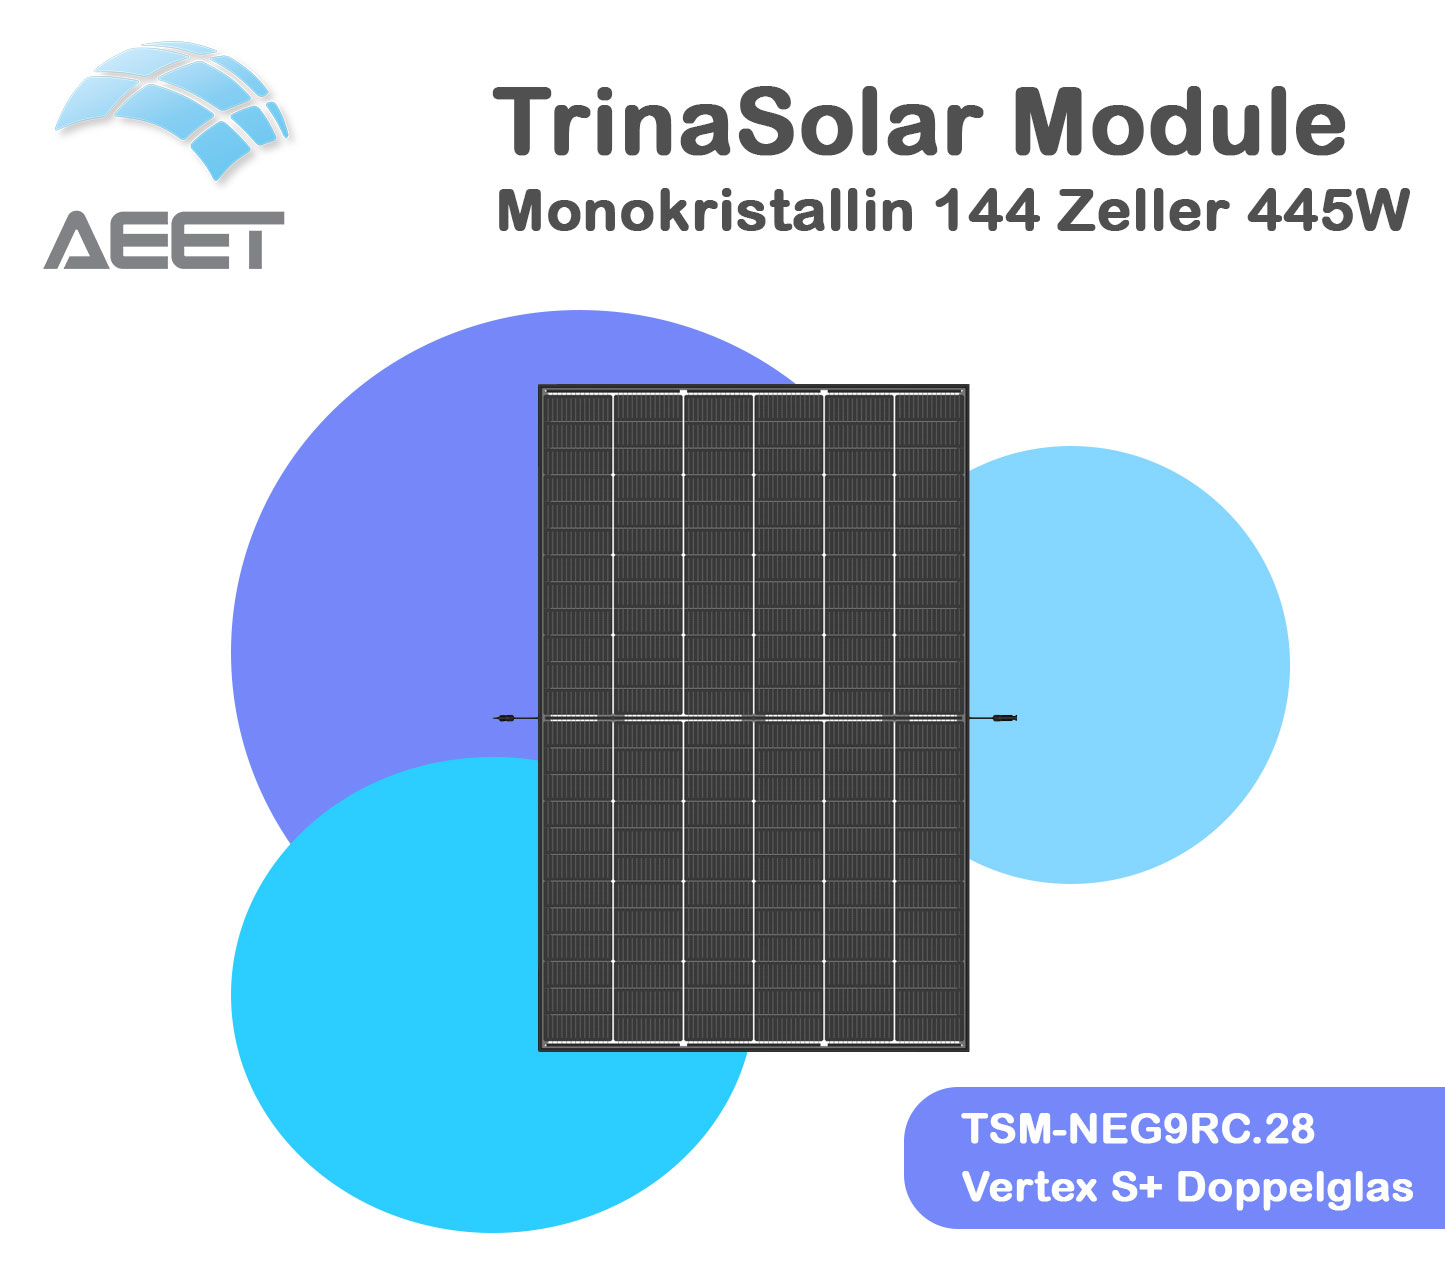 Solarmodule Trina 445 TSM-NEG9R.28 Vertex S+ Doppelglas